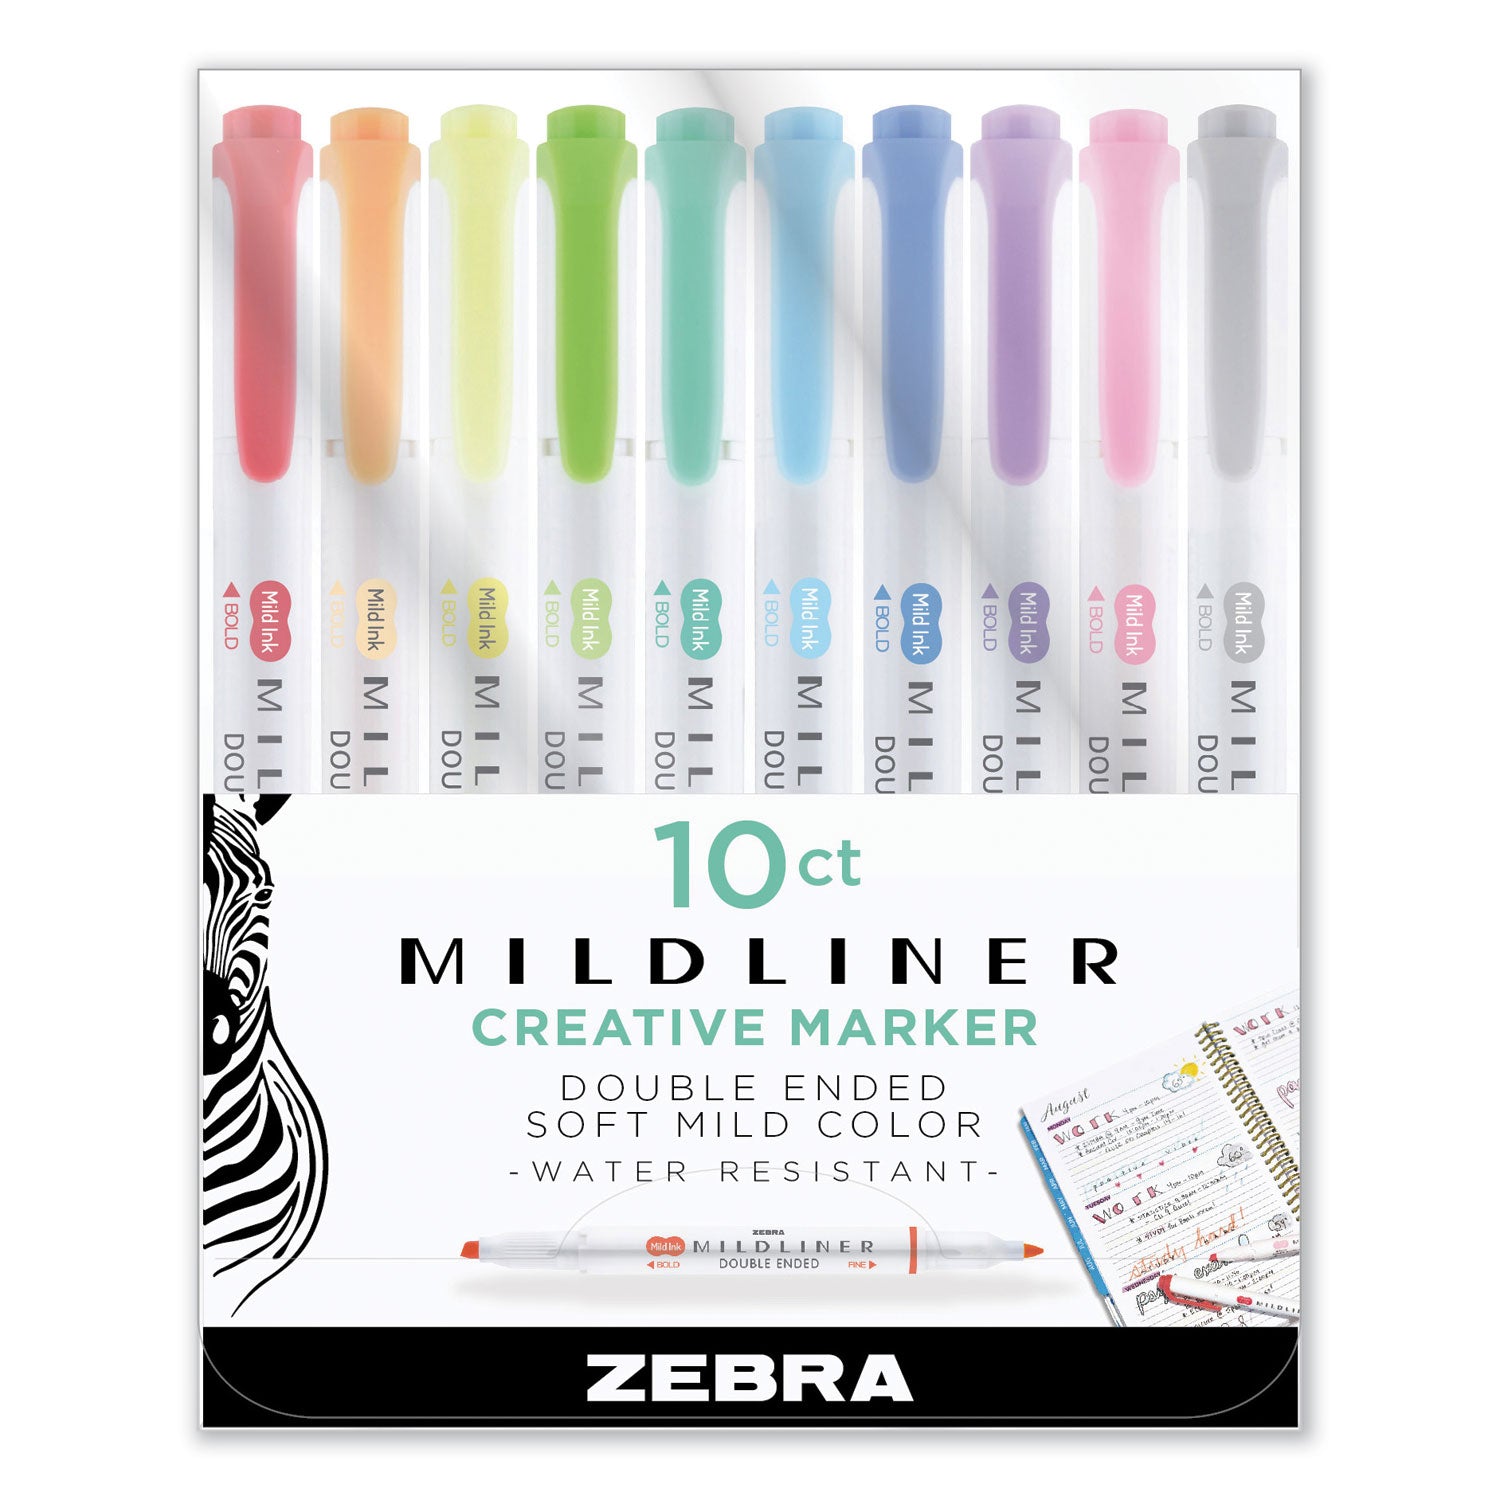 mildliner-double-ended-highlighter-assorted-ink-colors-bold-chisel-fine-bullet-tips-assorted-barrel-colors-10-set_zeb78101 - 1